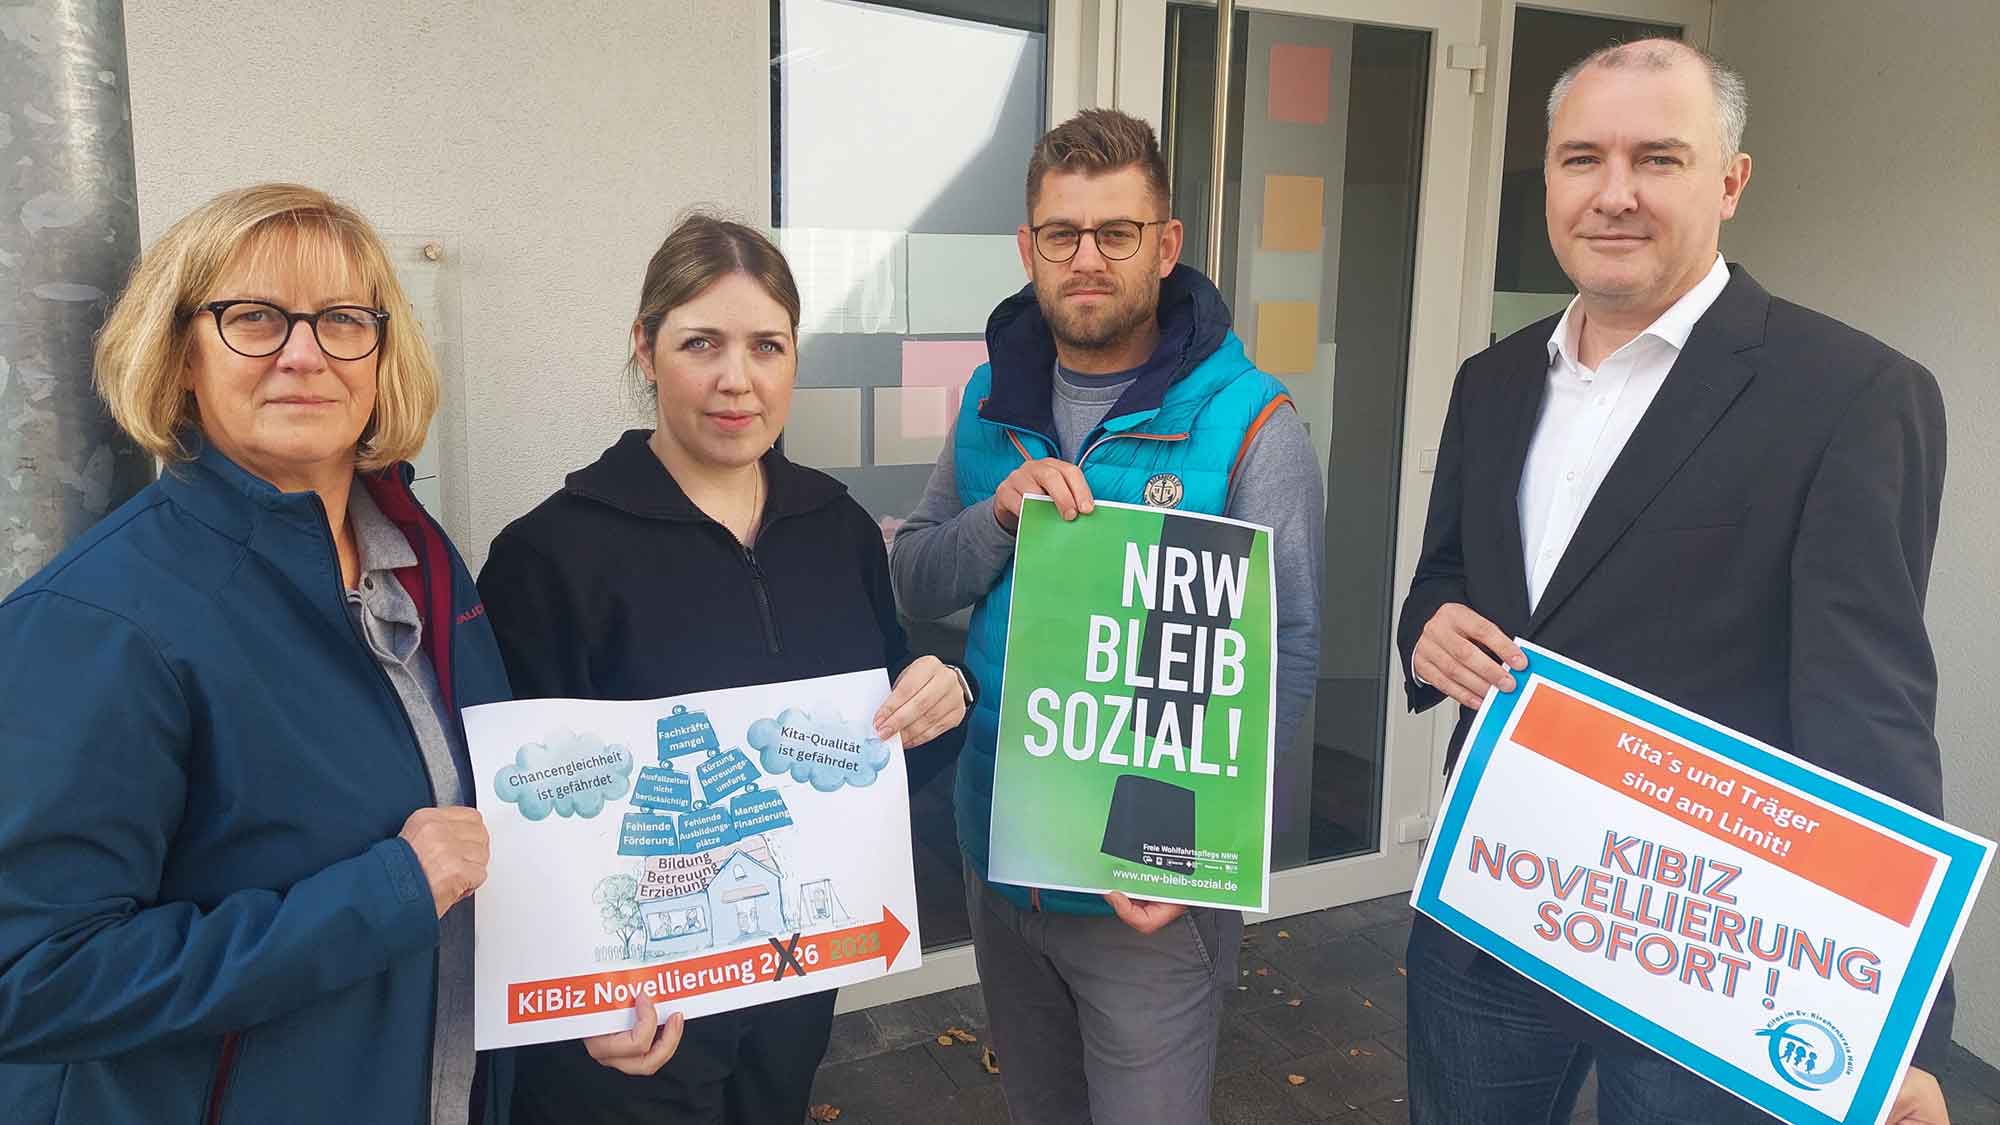 NRW bleib sozial! Kitas des Evangelischen Kirchenkreises Halle planen Protestaktionen